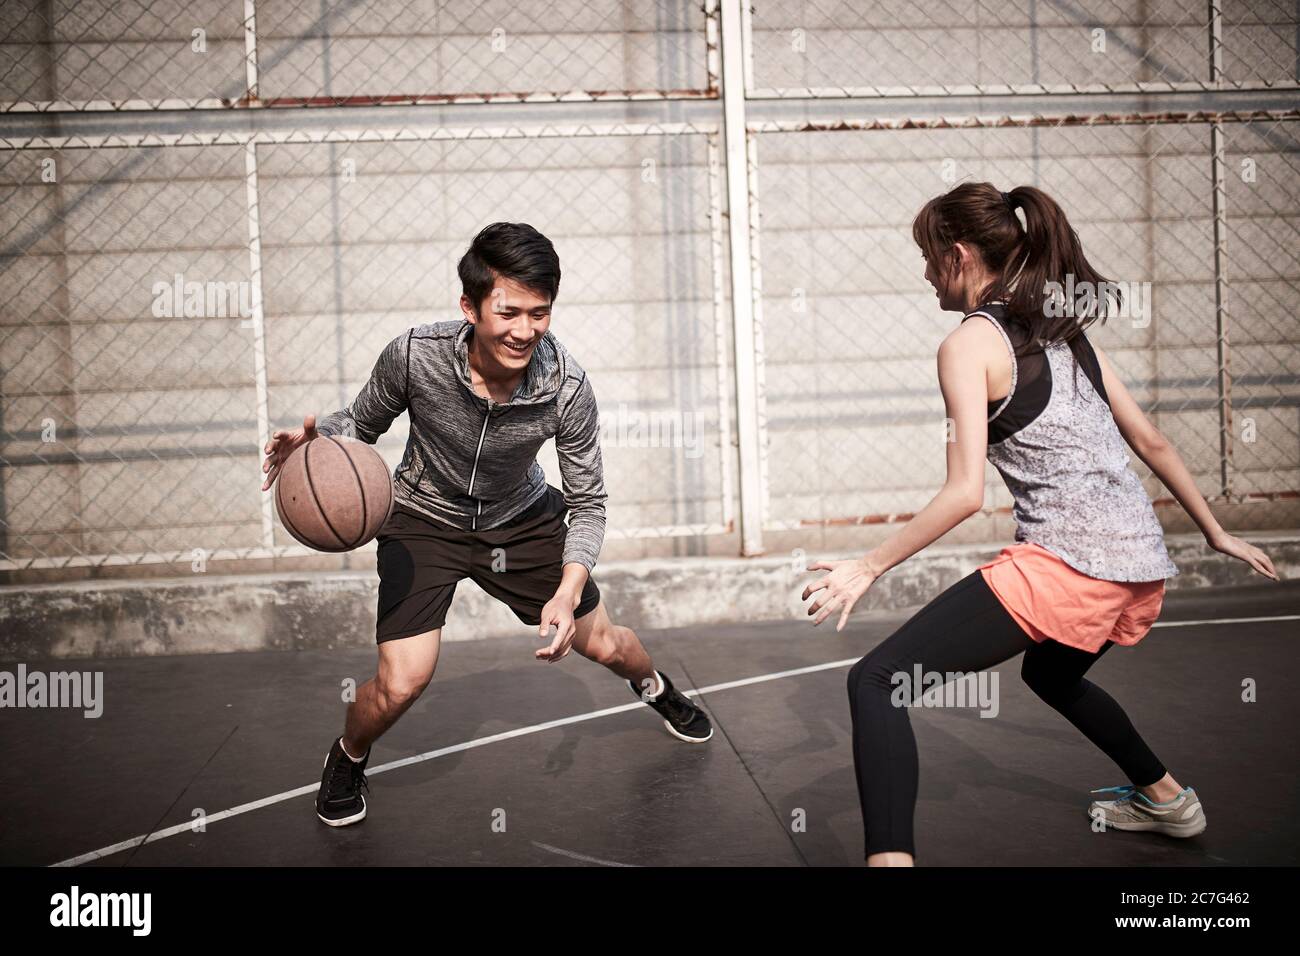 giovane uomo adulto asiatico e donna che si divertono giocando a basket su un campo all'aperto Foto Stock